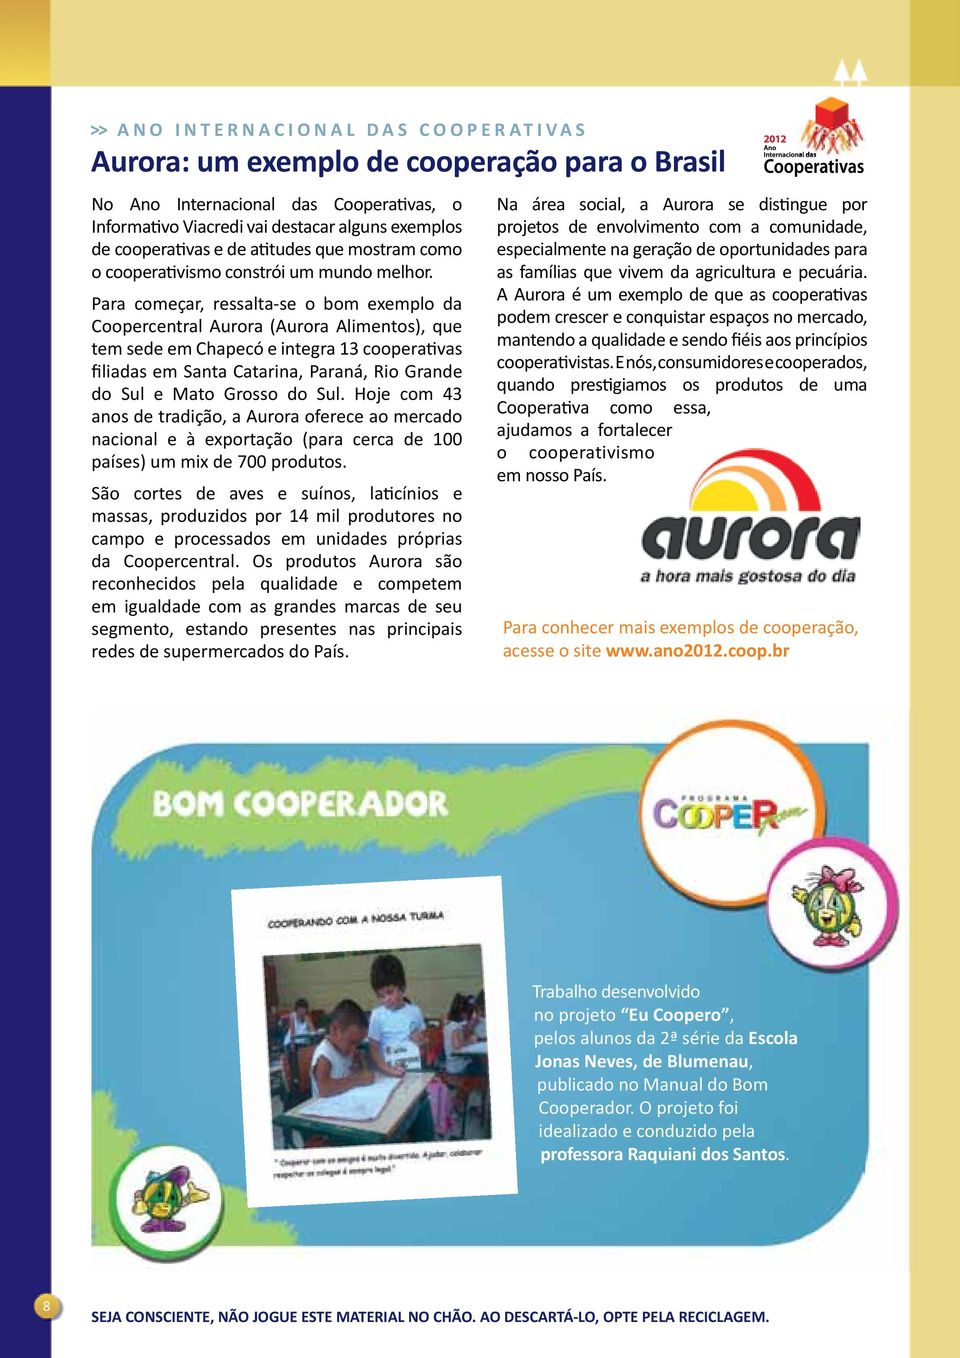 Para começar, ressalta-se o bom exemplo da Coopercentral Aurora (Aurora Alimentos), que tem sede em Chapecó e integra 13 cooperativas filiadas em Santa Catarina, Paraná, Rio Grande do Sul e Mato